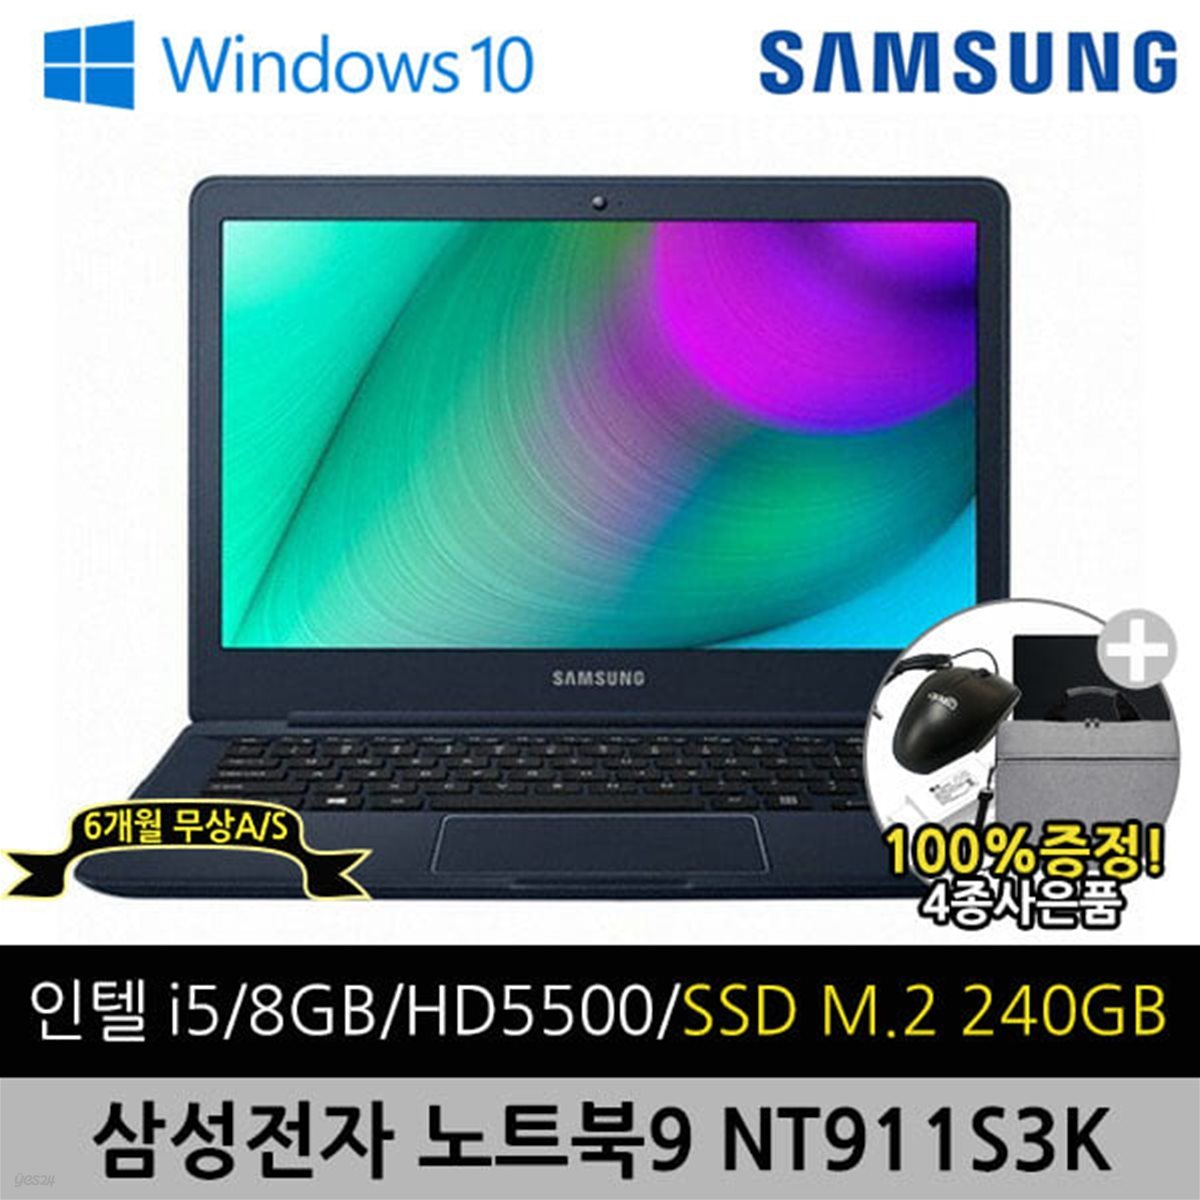 [중고] 삼성 아티브북9 NT911S3K 13.3인치 i5 8G SSD 240G 윈도우10 A+급 리퍼 중고노트북